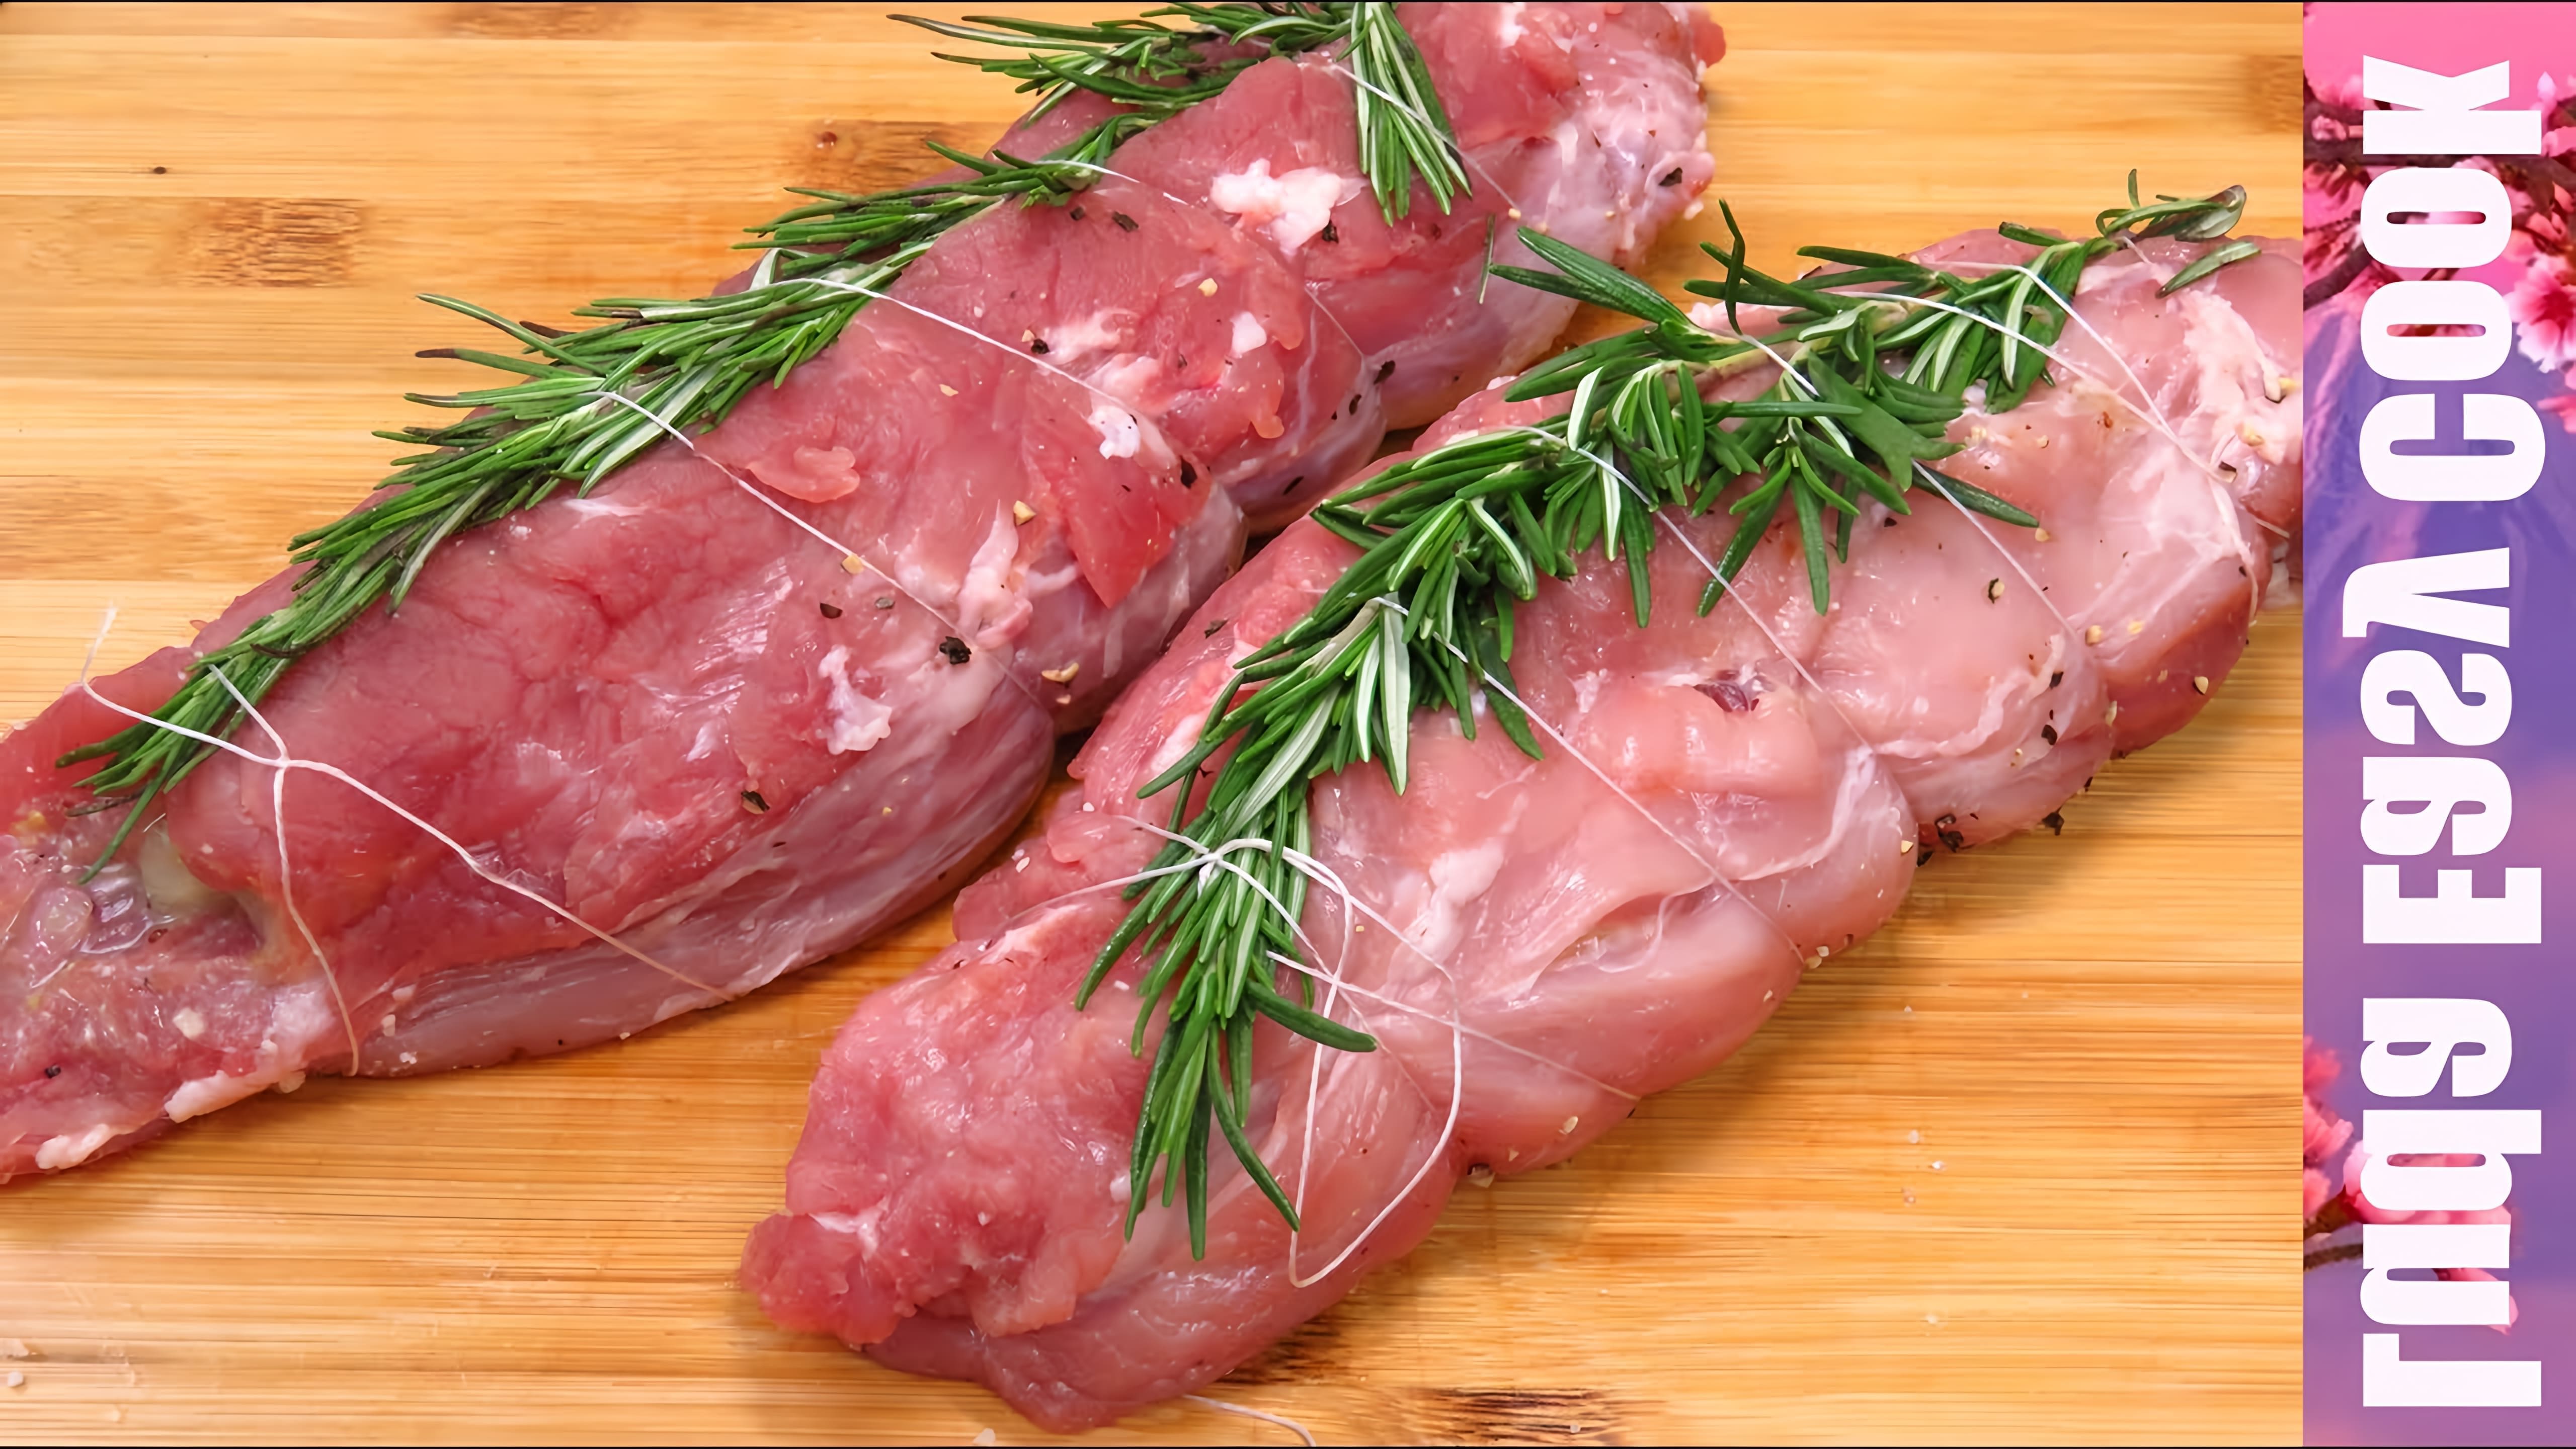 В этом видео демонстрируется рецепт приготовления свиной вырезки с грушами и вкусным соусом